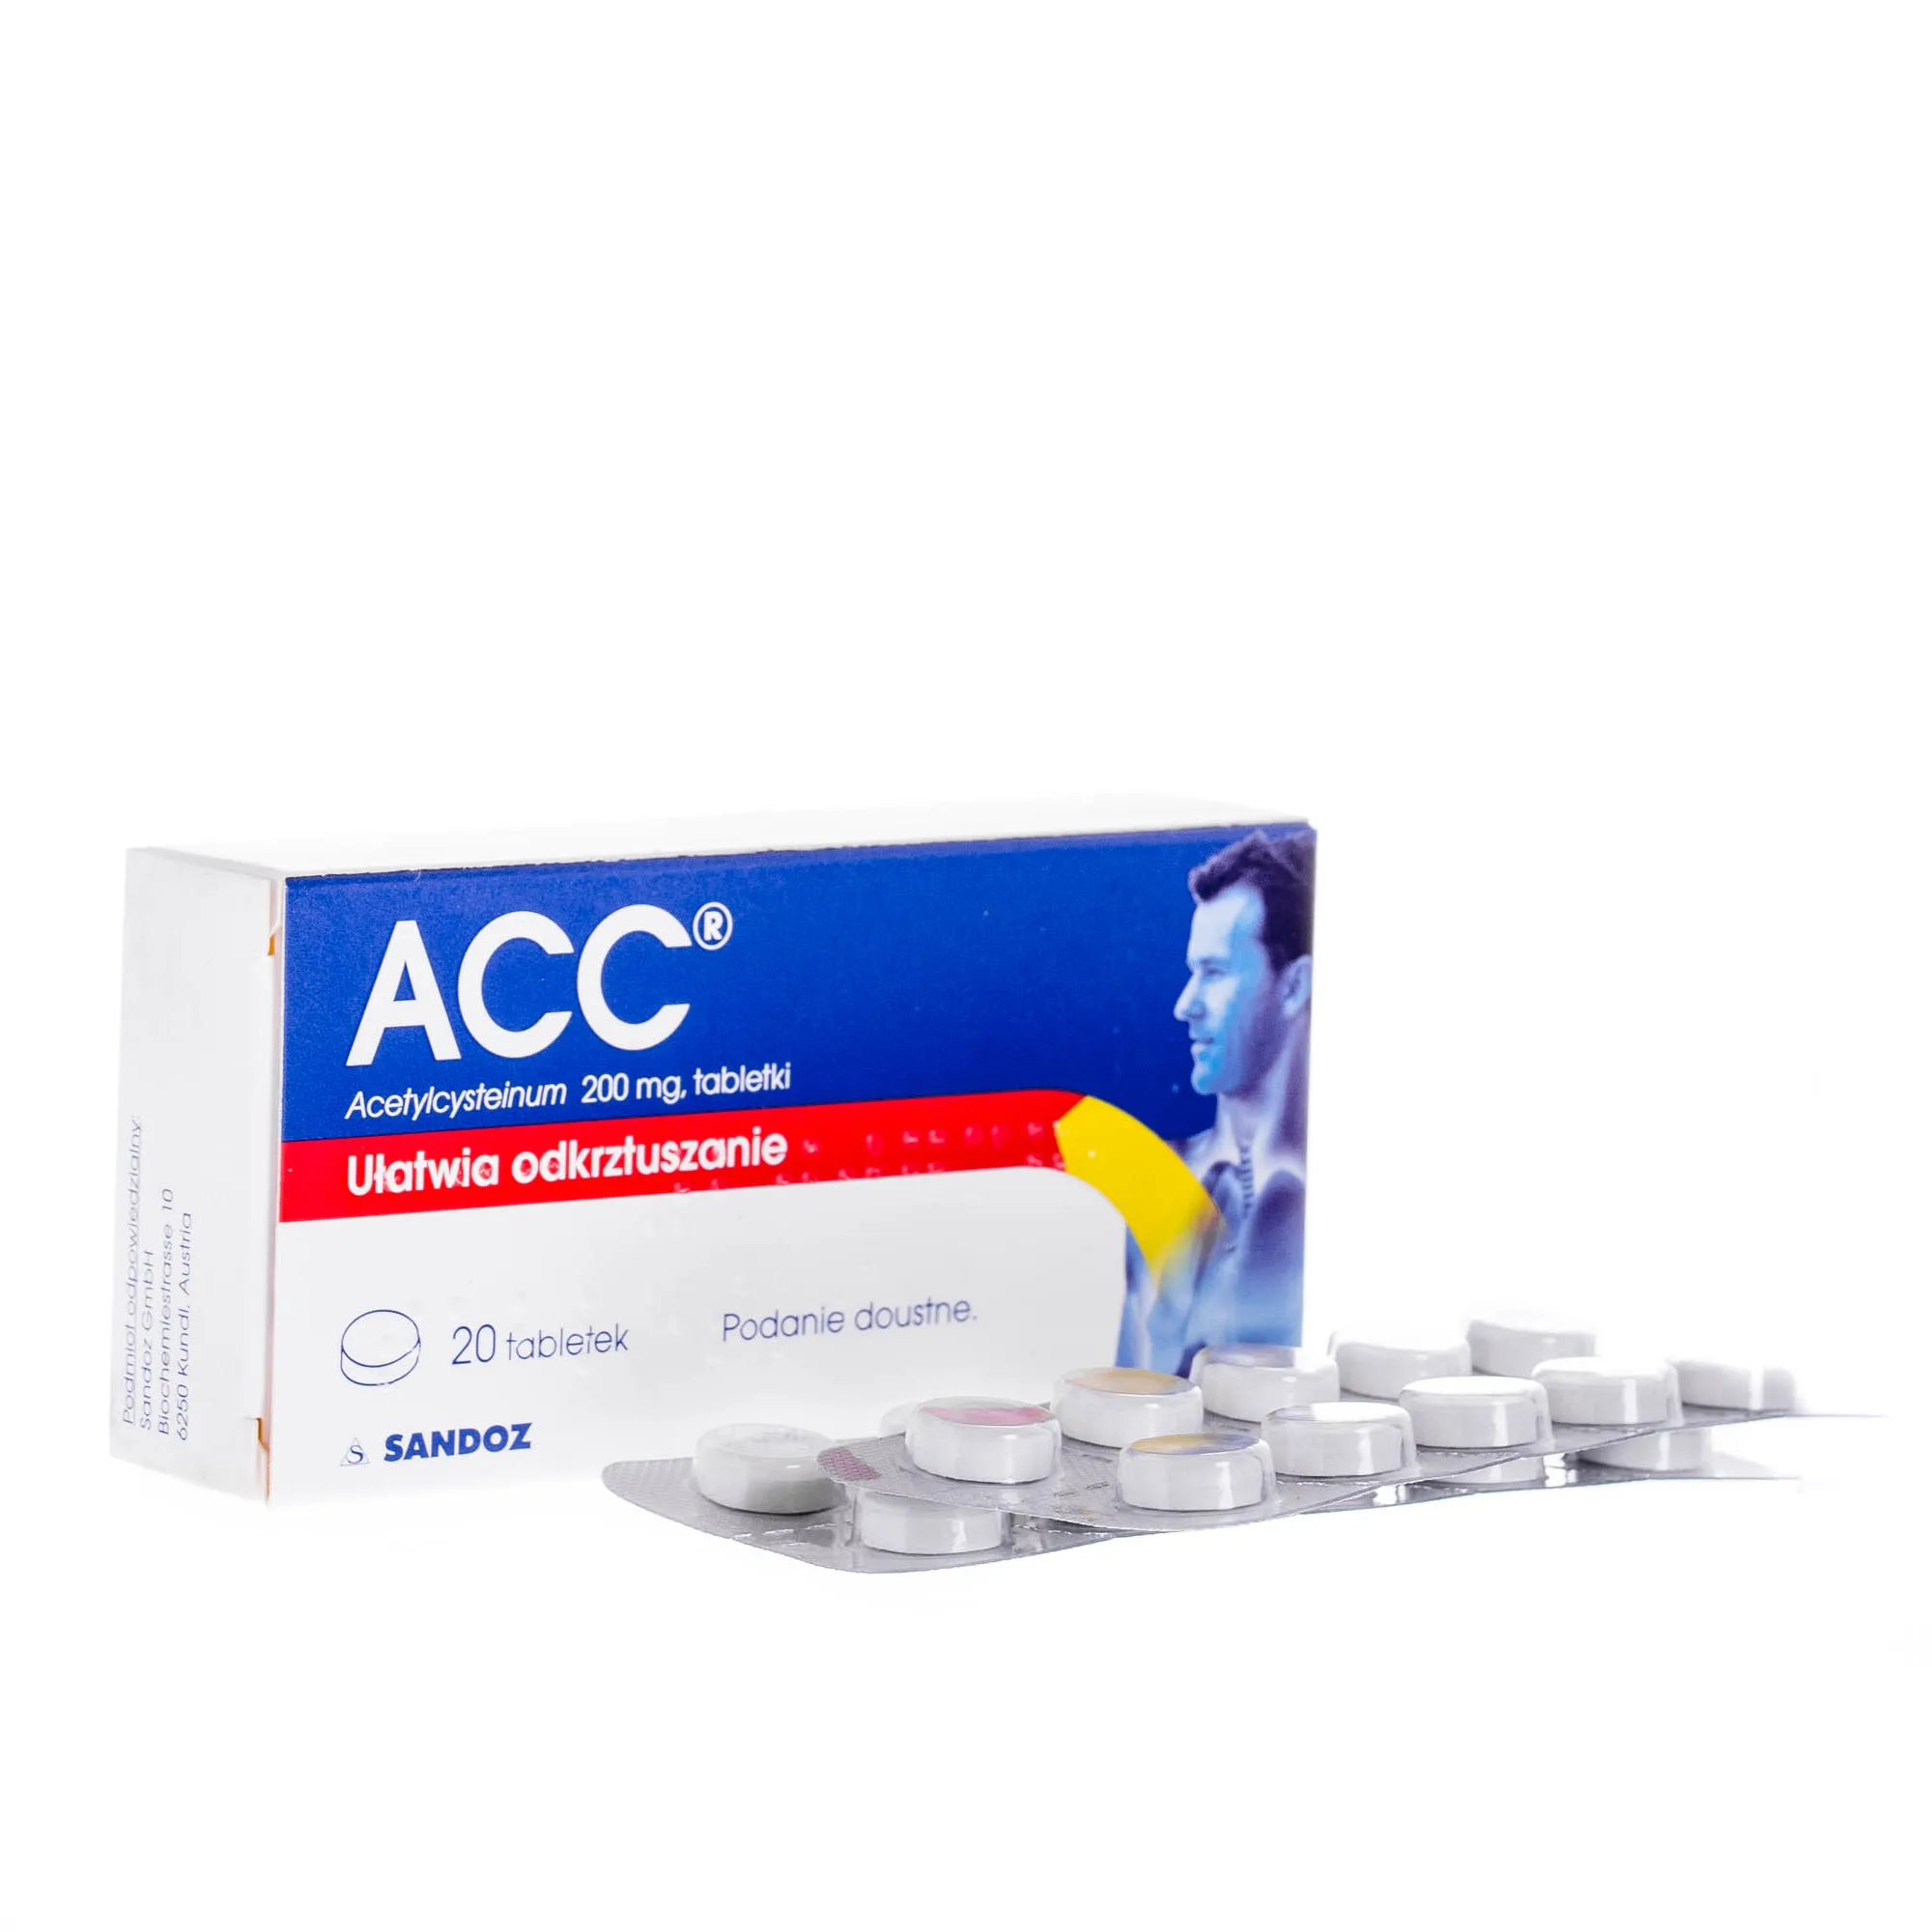 ACC - lek ułatwiający odkrztuszanie, Acetylcysteinum 200 mg, 20 tabletek